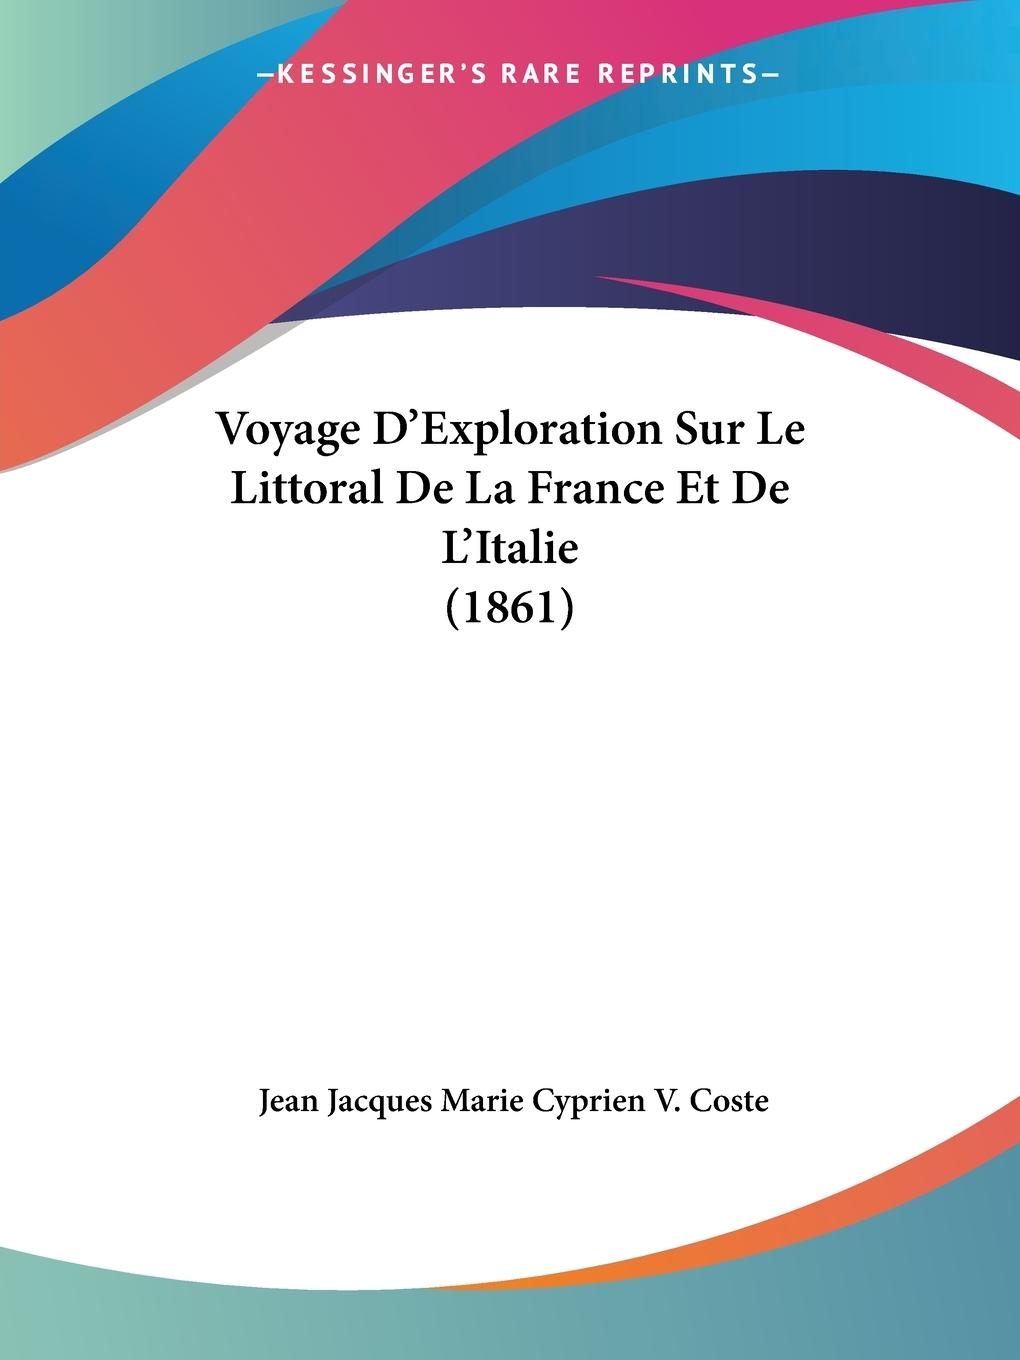 Voyage D Exploration Sur Le Littoral De La France Et De L Italie (1861) - Coste, Jean Jacques Marie Cyprien V.